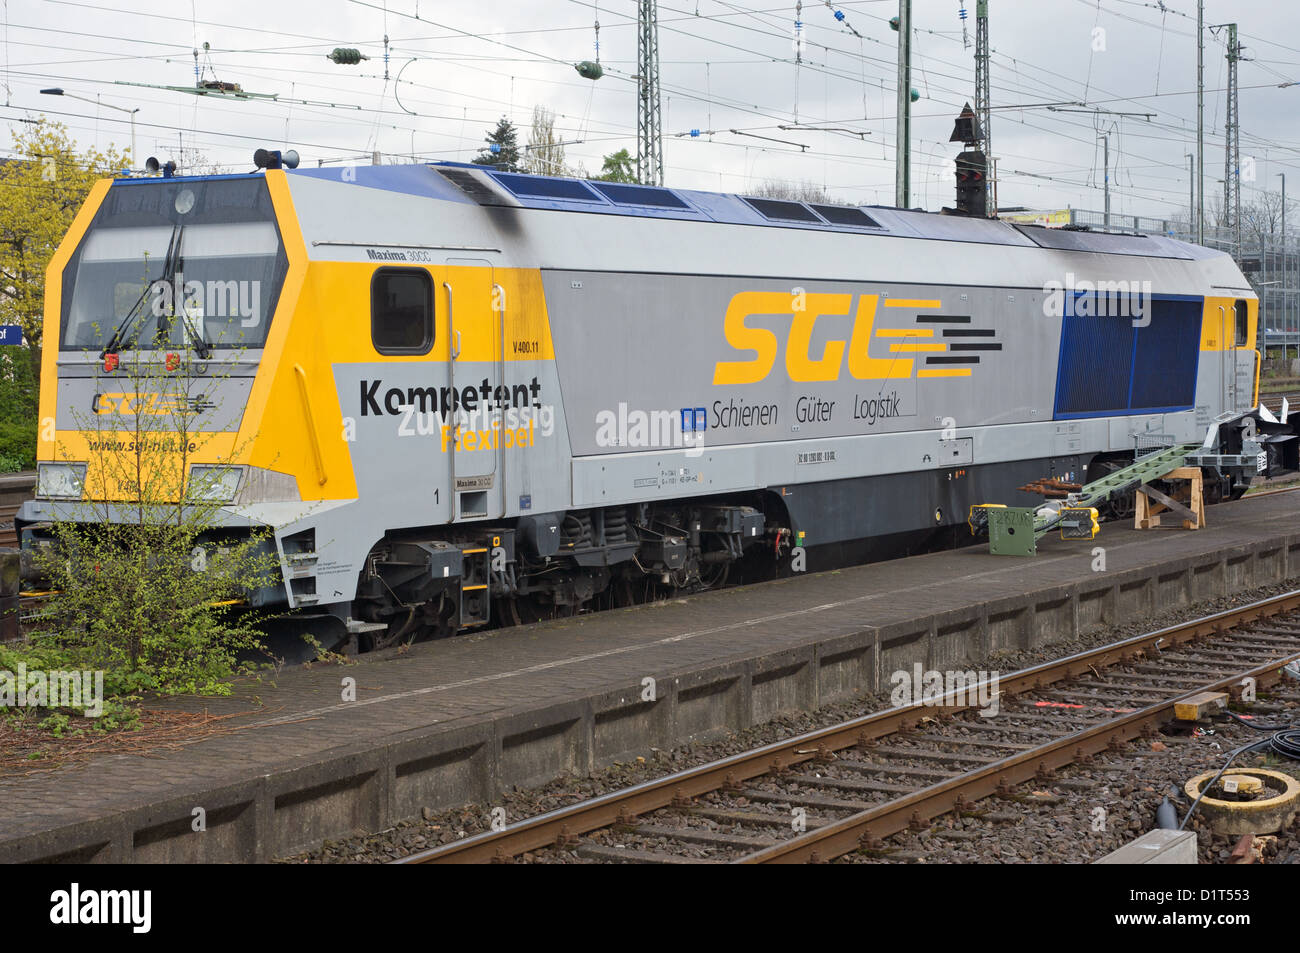 Schienen Guter Logistik diesel locomotive Stock Photo